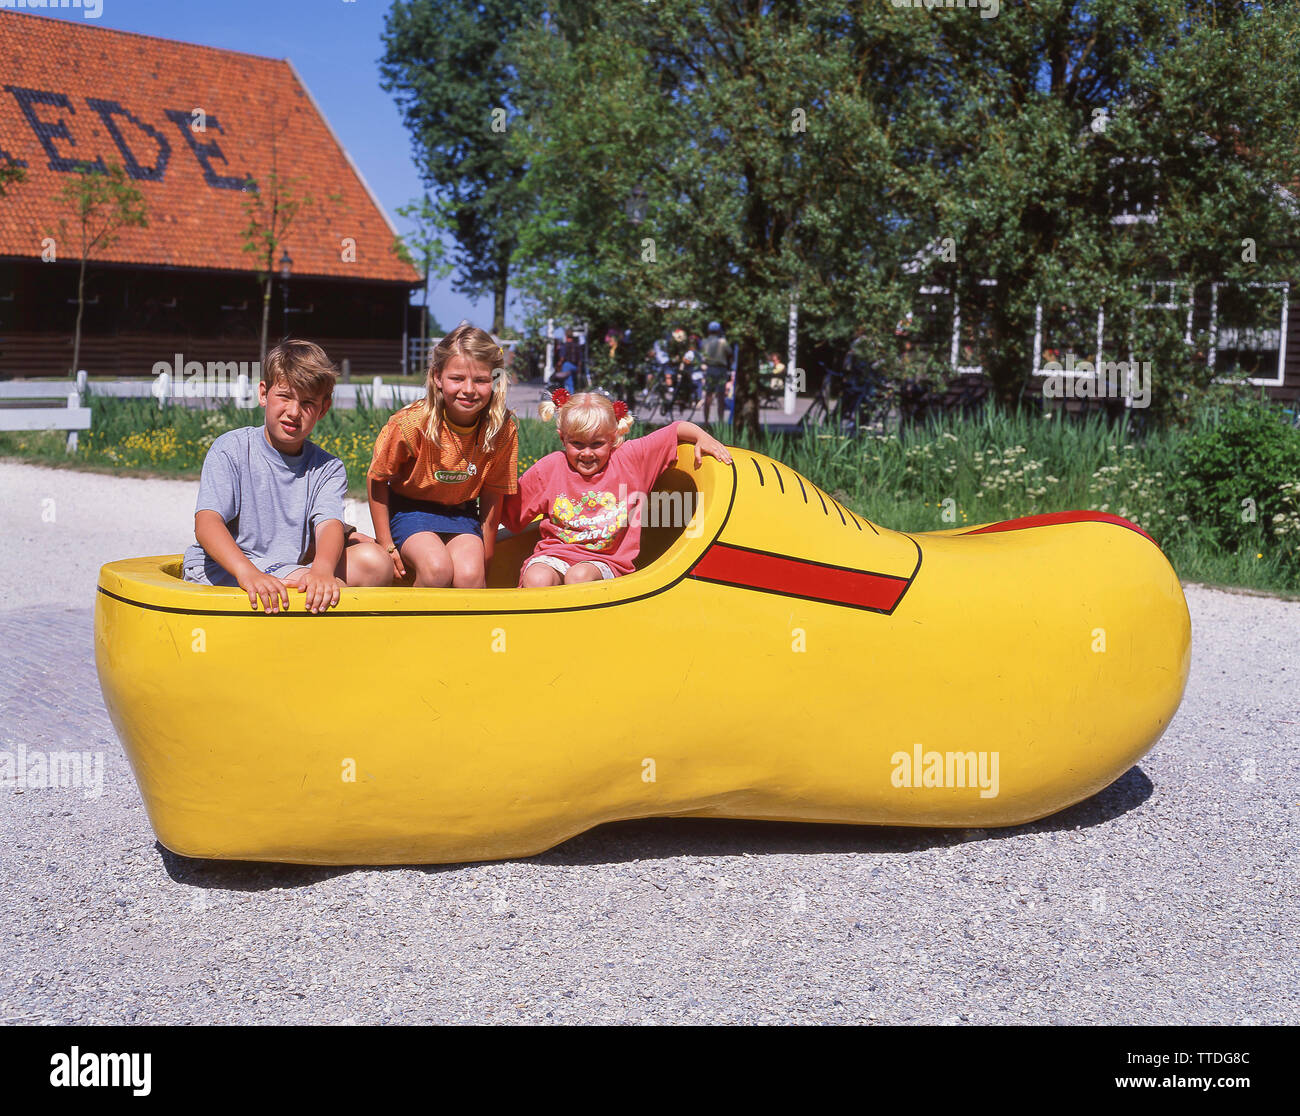 Los niños dentro de un gigante clog, Zaanse Schans, Zaandam, Noord-Holland, Reino de los Países Bajos Foto de stock